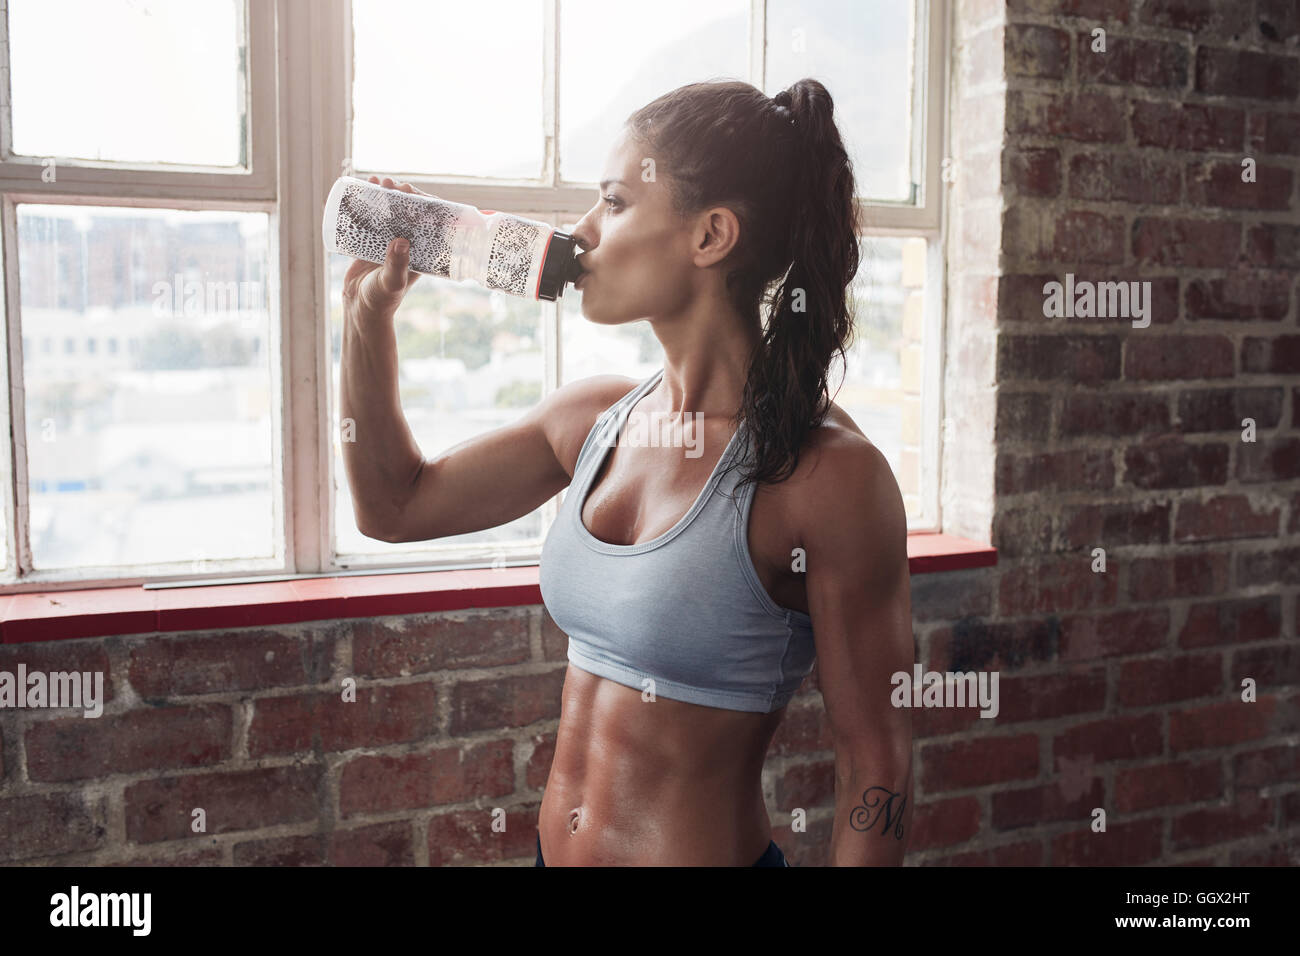 Colocar joven de agua potable en el gimnasio. Mujer toma descanso muscular después del ejercicio. Foto de stock